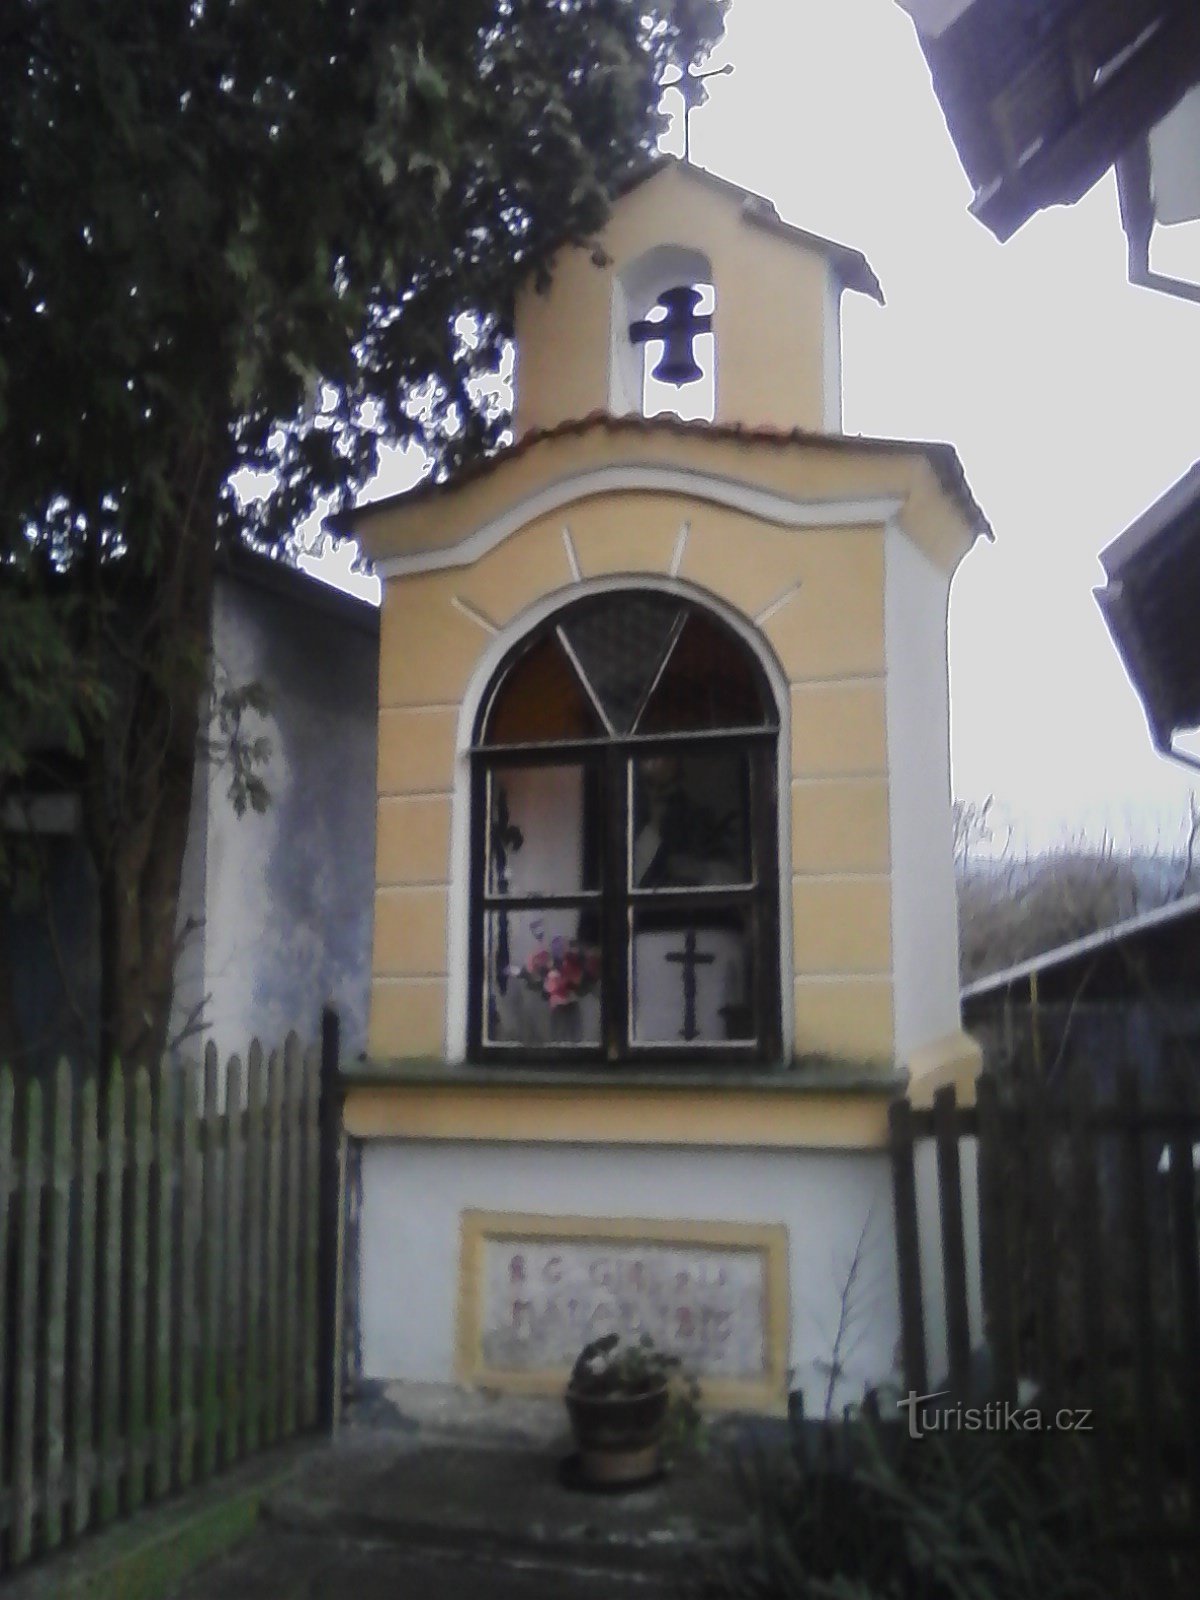 2. リドコヴィツェにある、鐘楼と v 字型の両腕の十字架がある小さなニッチ礼拝堂